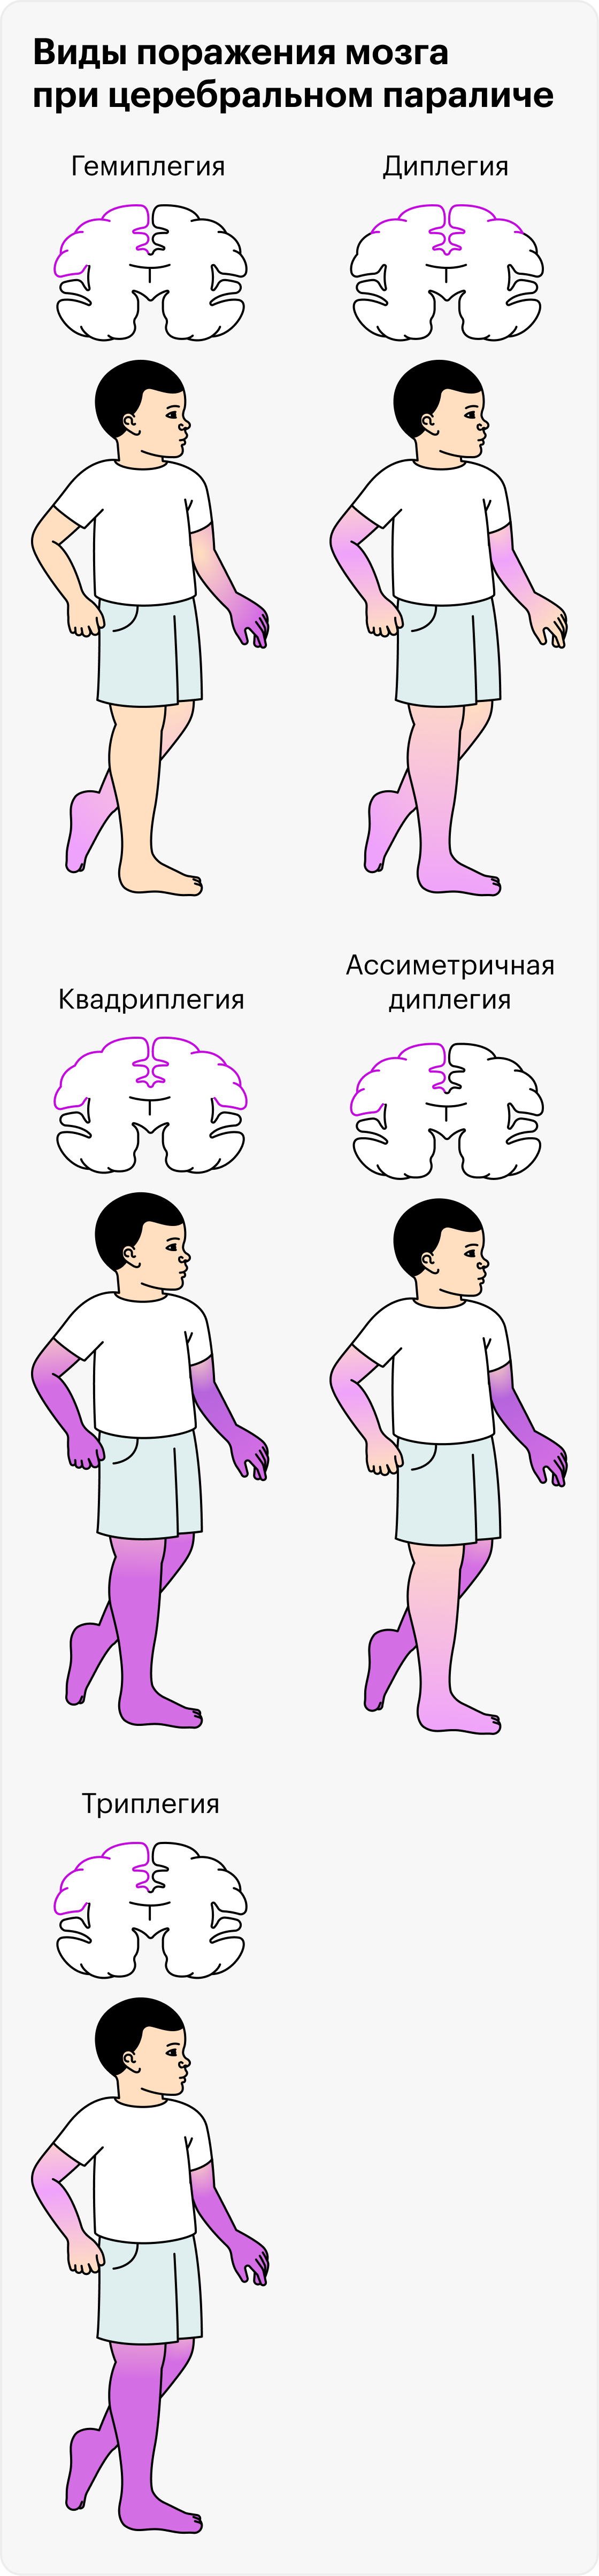 Церебральный паралич проявляется по-разному, в зависимости от того, какой участок мозга поражен и насколько сильно: от гемиплегии, когда движения нарушены в руке и ноге с одной стороны, до квадриплегии, когда человеку с трудом управляет обеими руками и ногами